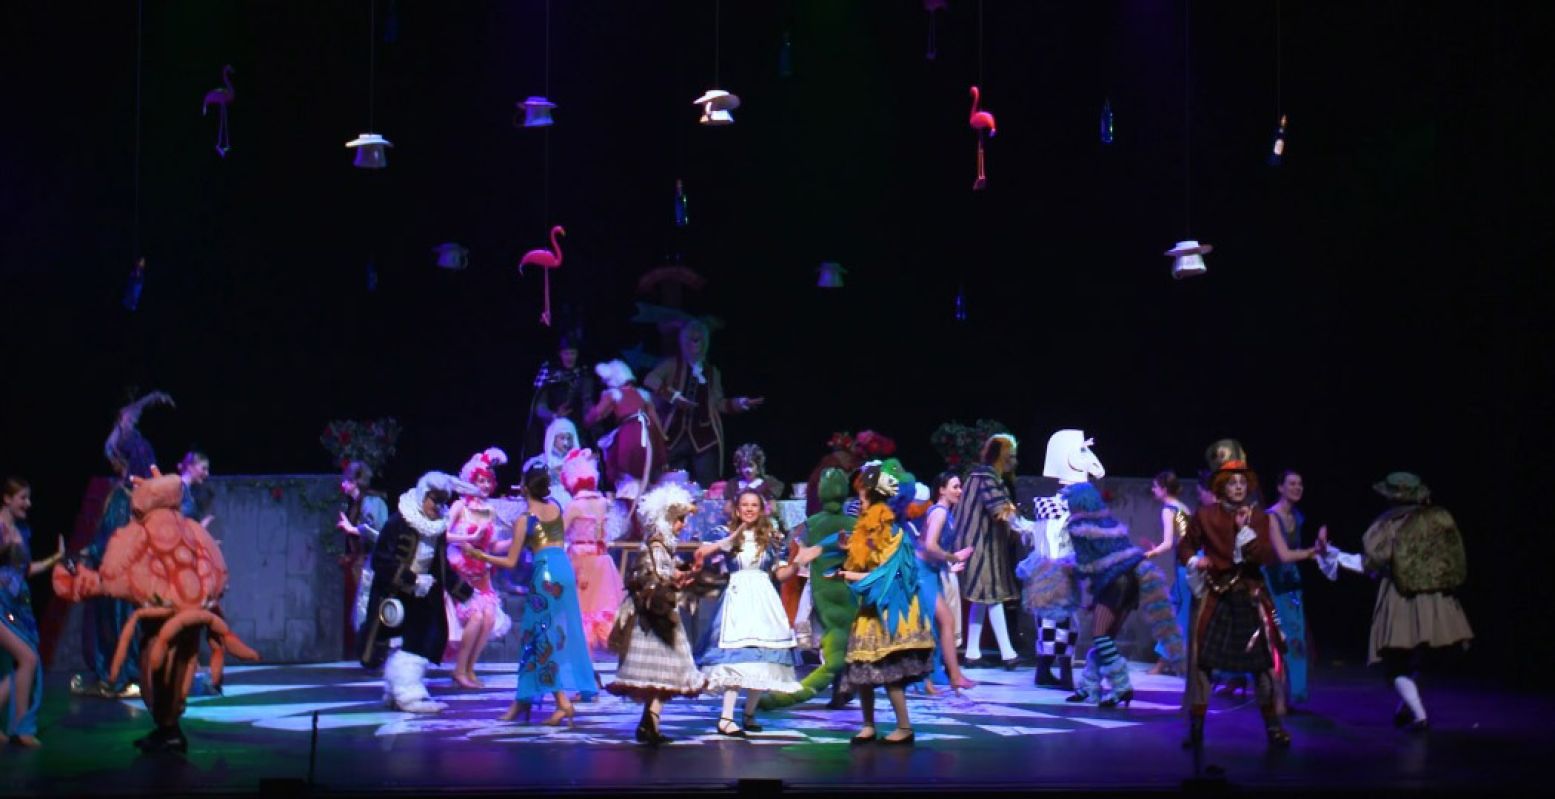 Zingen, dansen, het gaat er vrolijk aan toe in Wonderland. Foto: Nationaal Jeugd Musical Theater / still uit de trailer